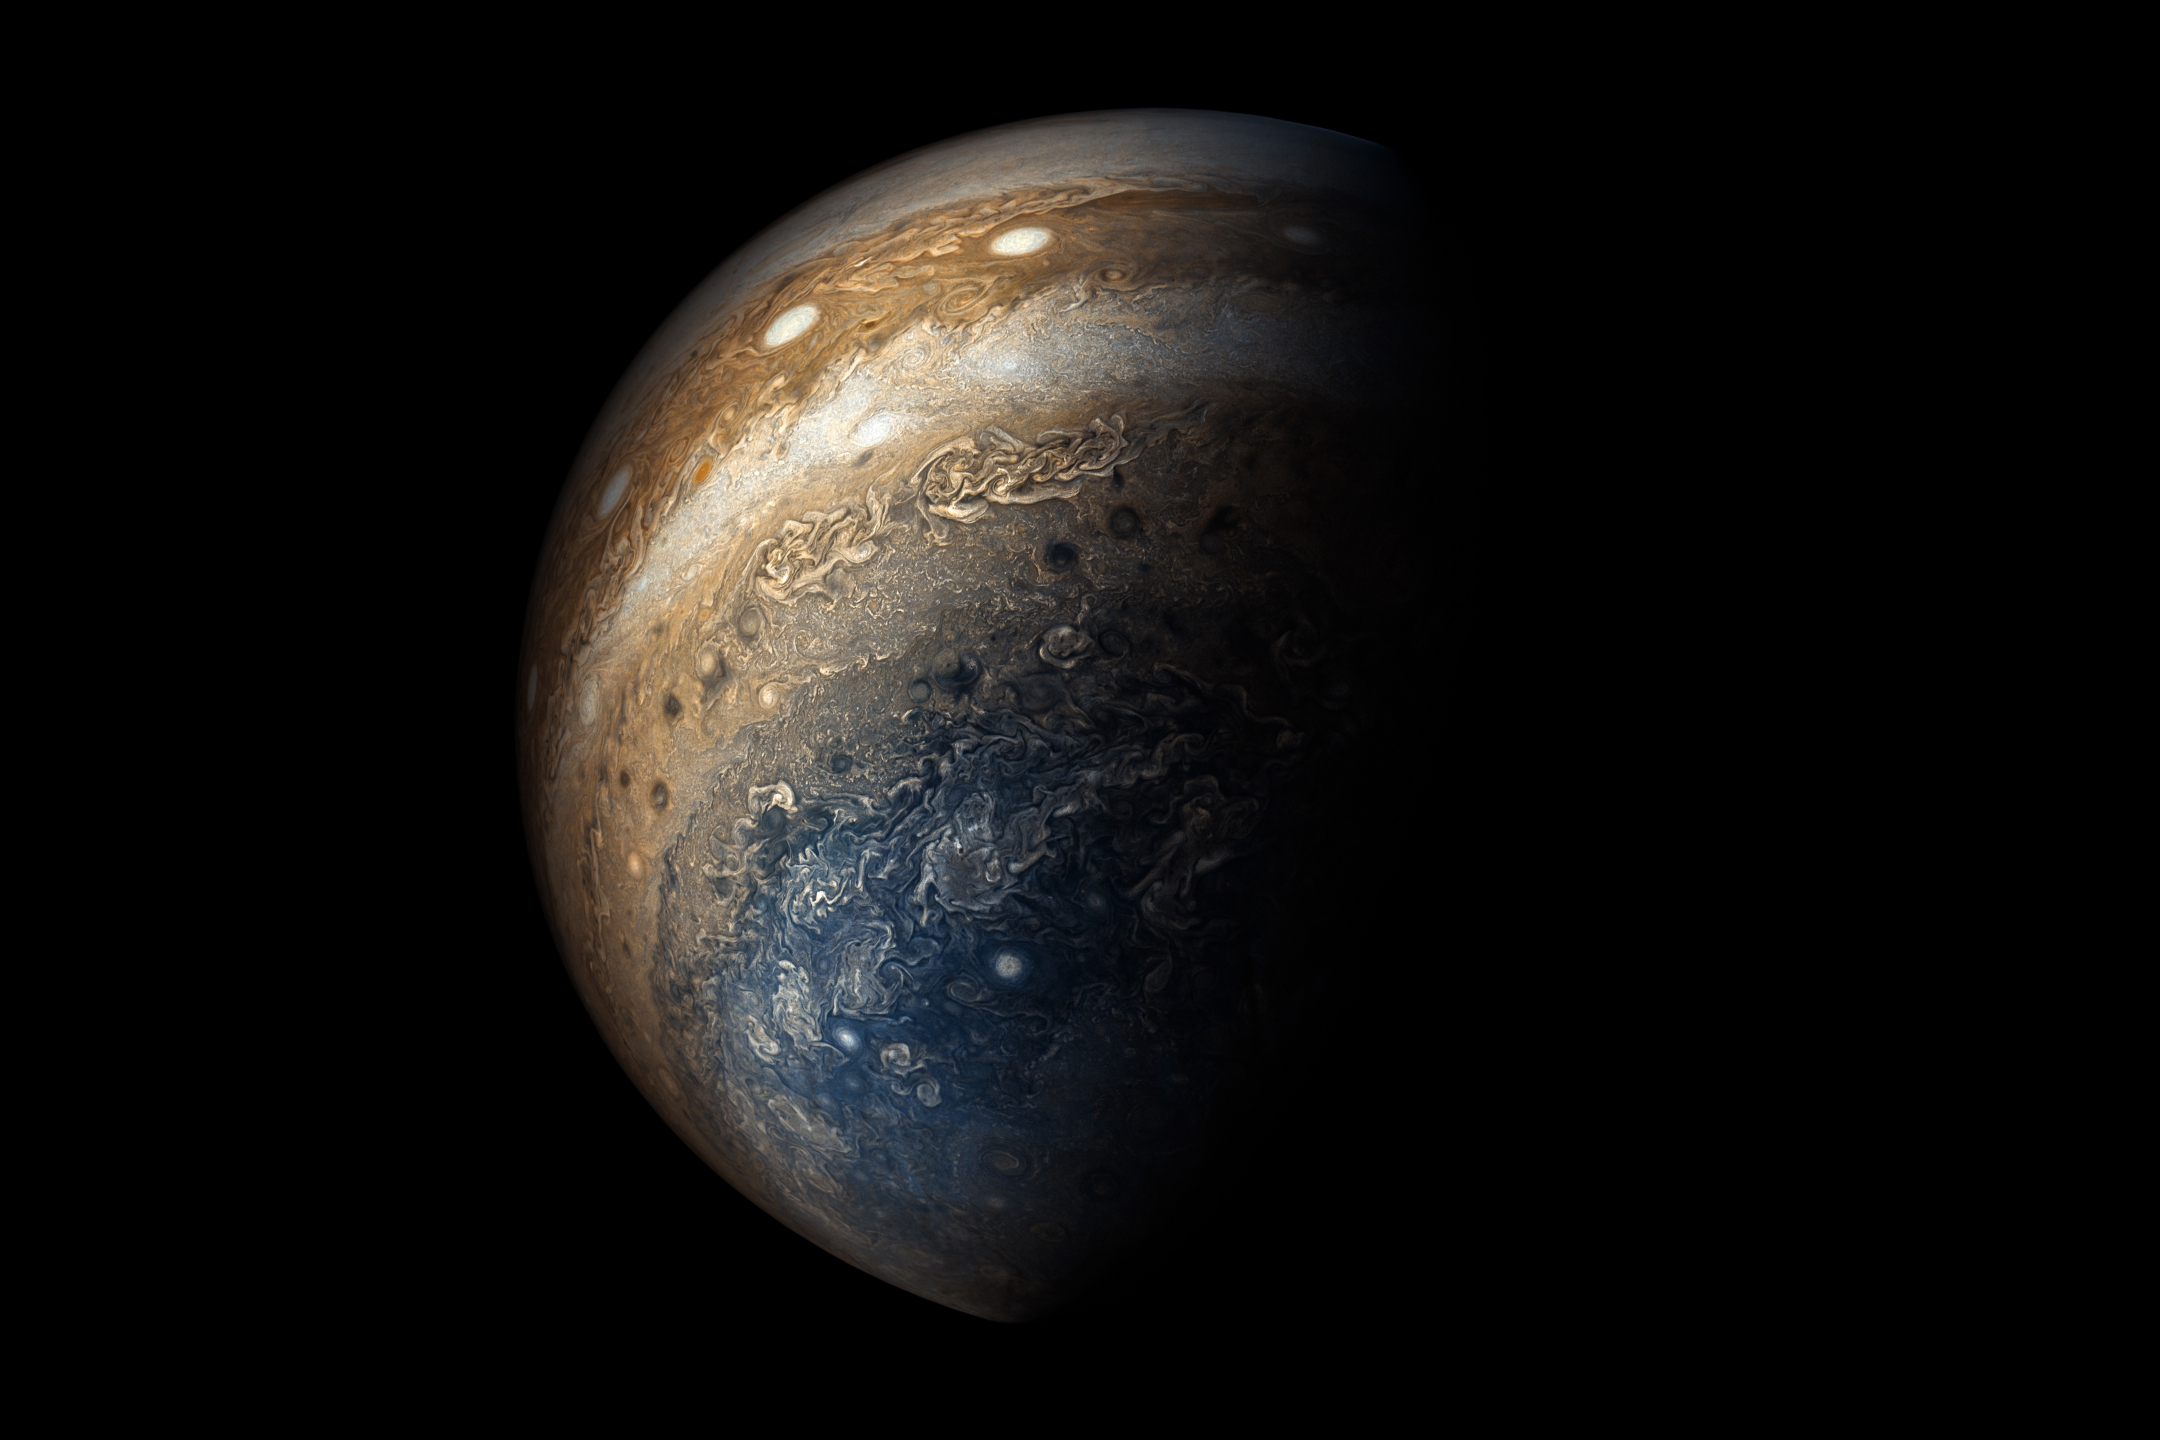 Descarga gratuita de fondo de pantalla para móvil de Planeta, Ciencia Ficción, Júpiter.